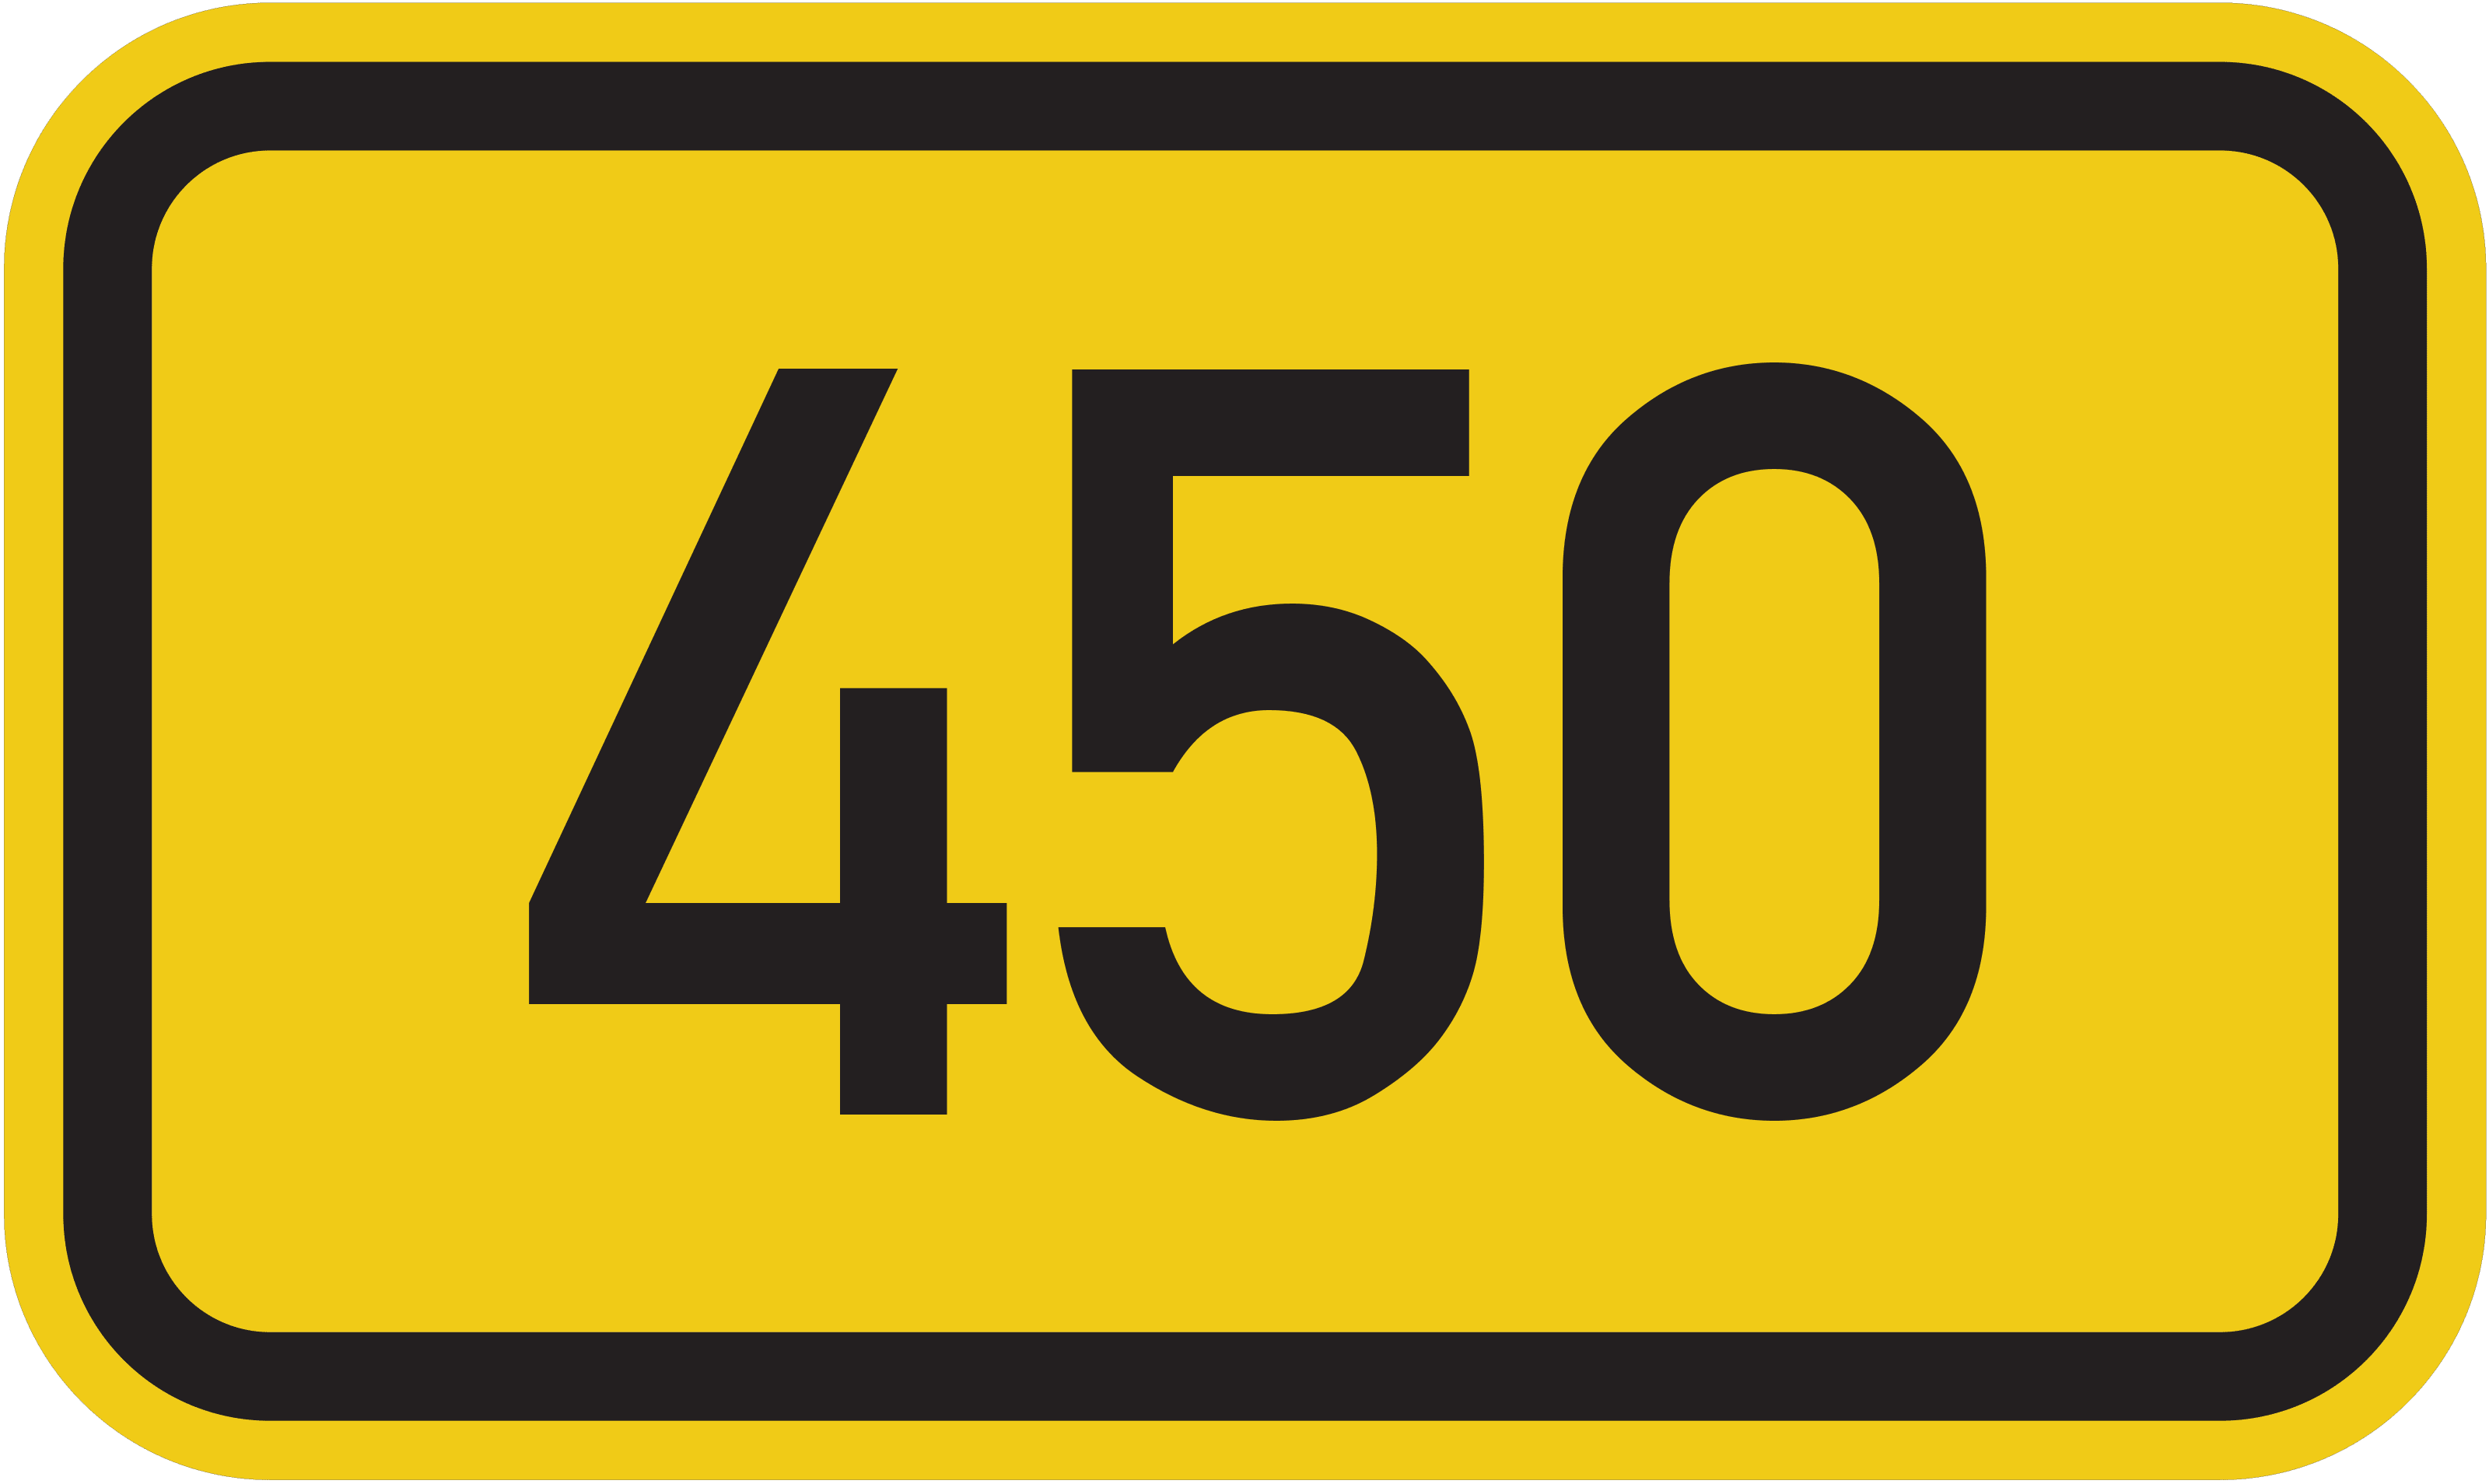 Bundesstraße B 450